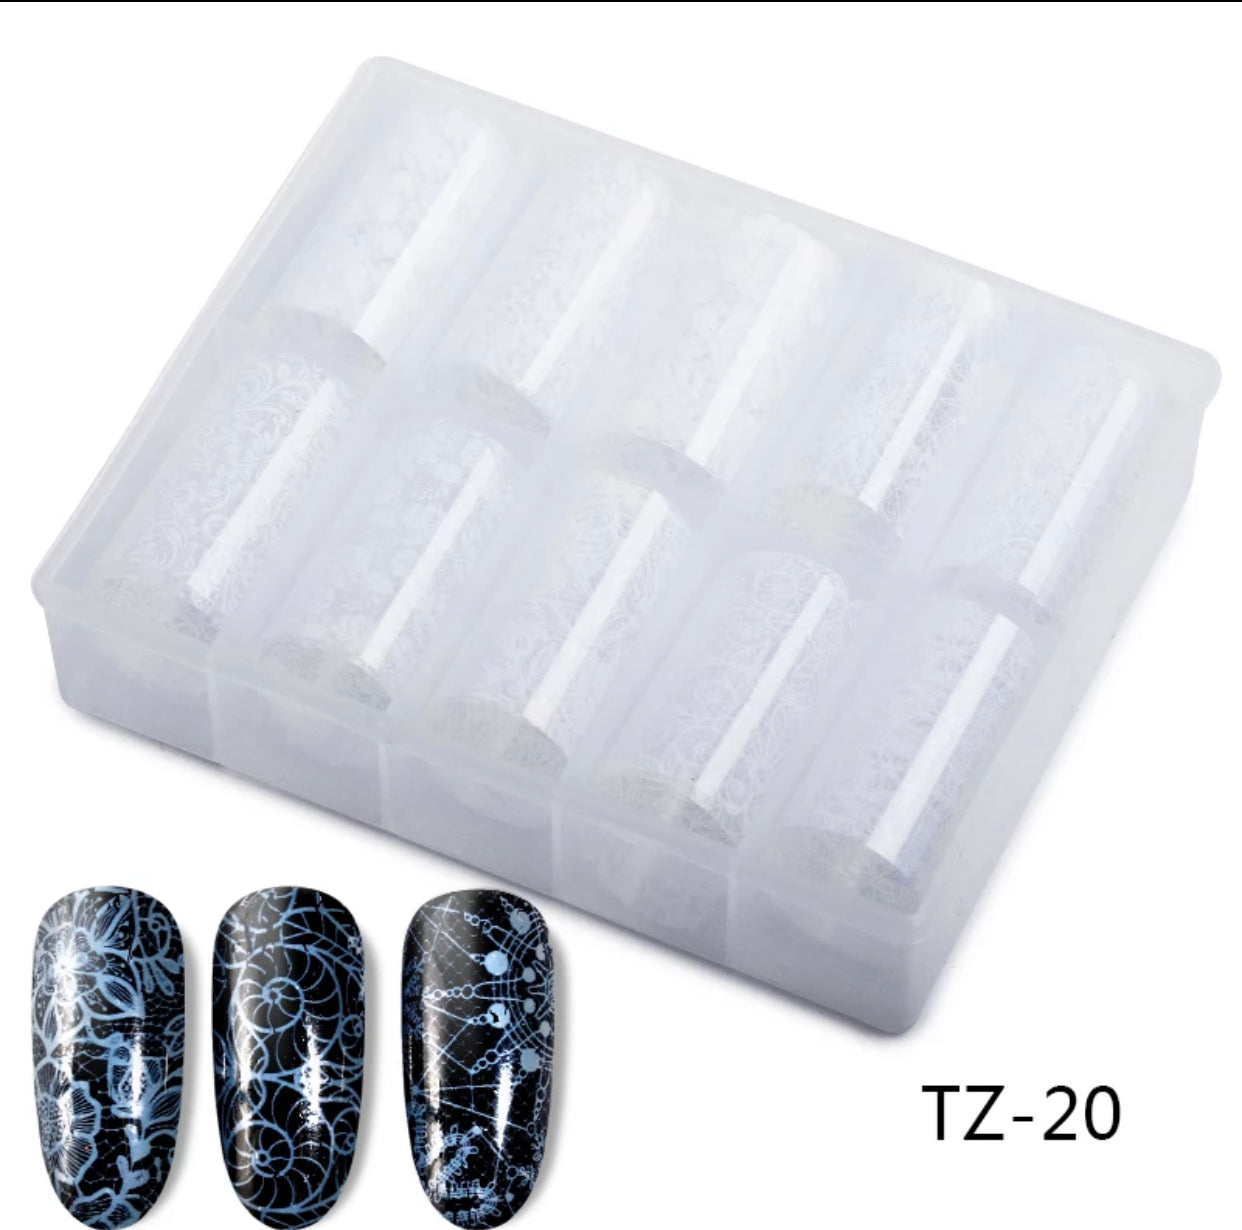 Transparent White Flowers Mix Design TZ-20 - Premier Nail Supply 